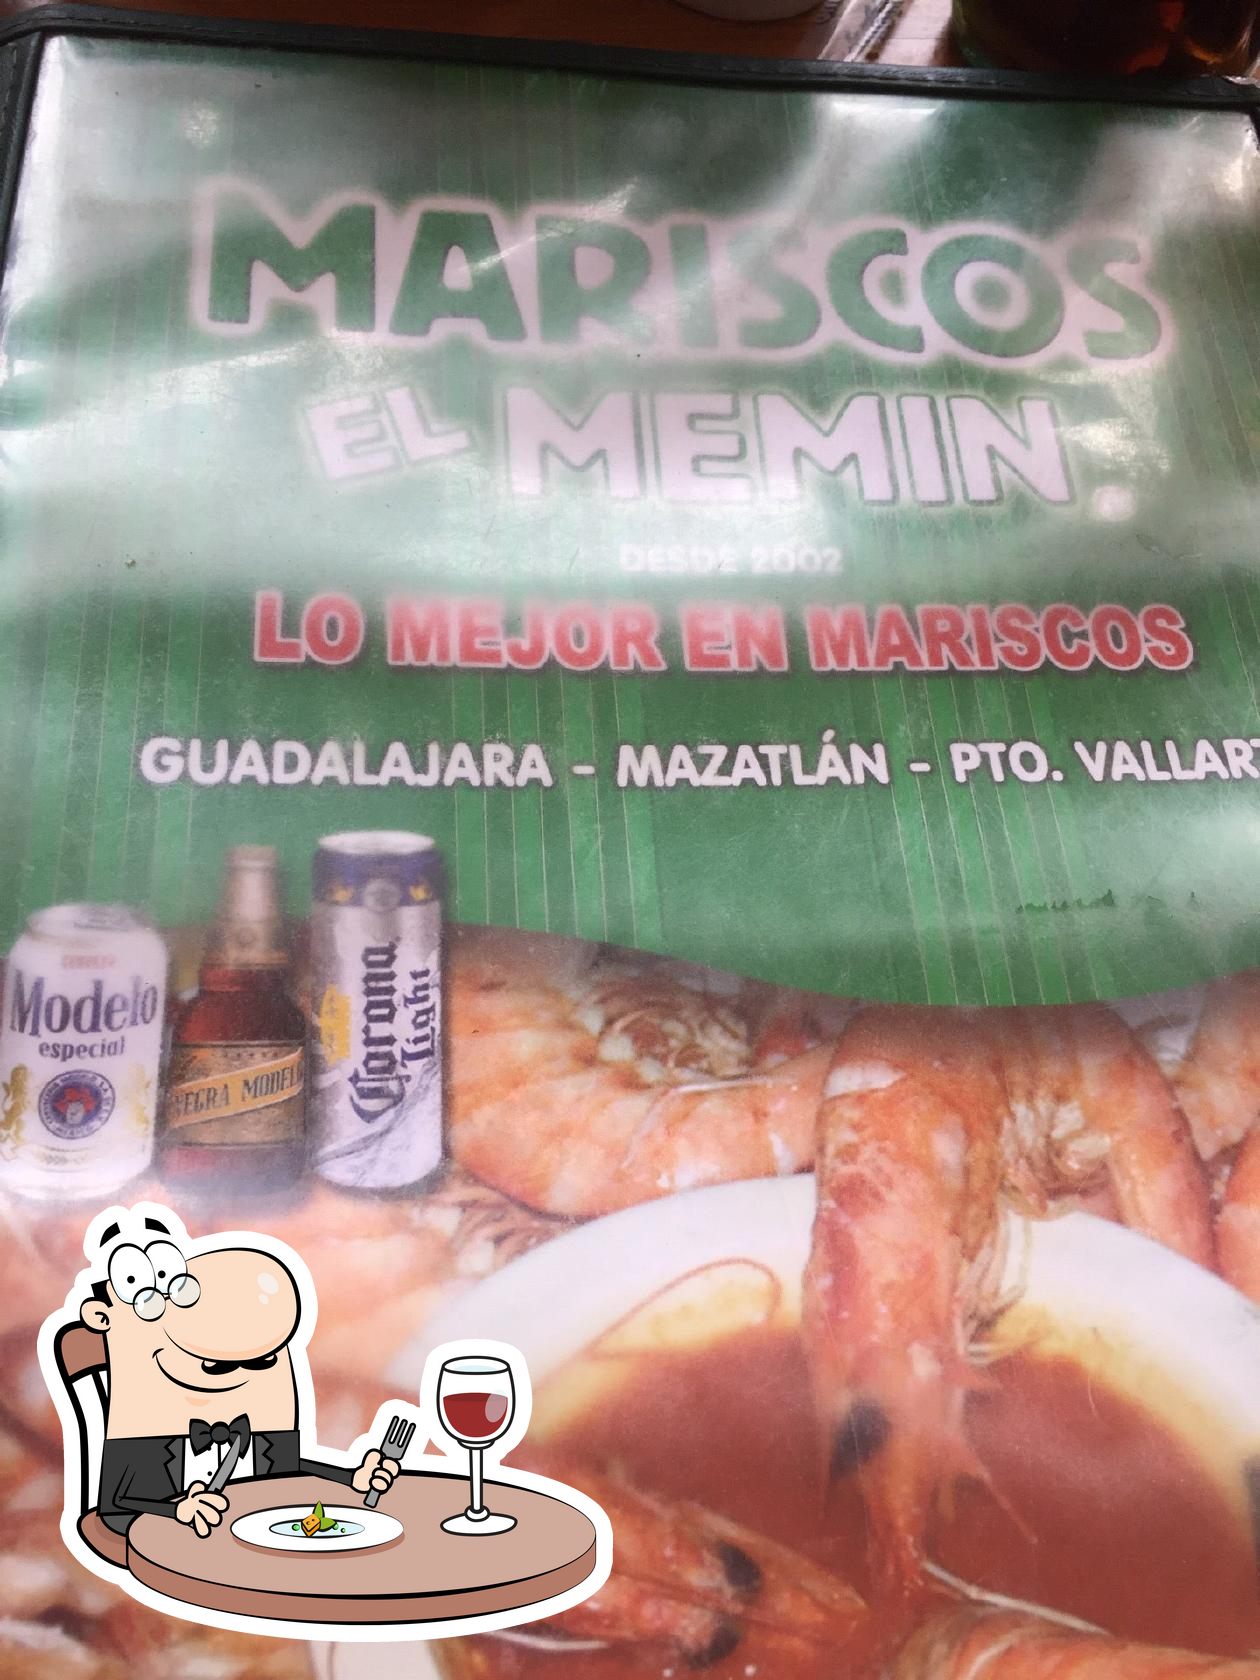 El Memin Abastos restaurant, Guadalajara - Restaurant reviews